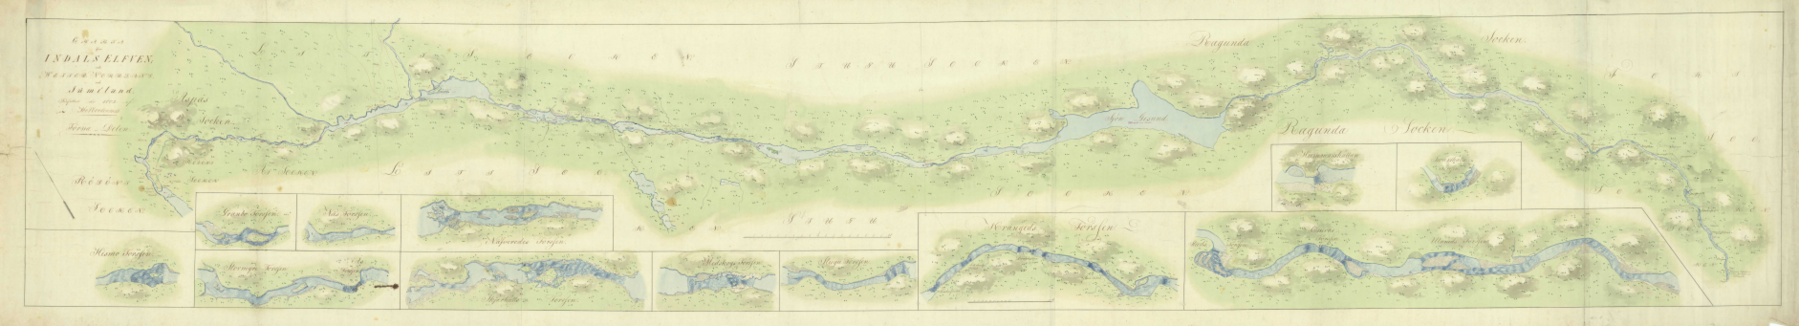 Historisk karta från 1802 över Indalsälvens utbredning från Storsjön mot Bottniska viken.